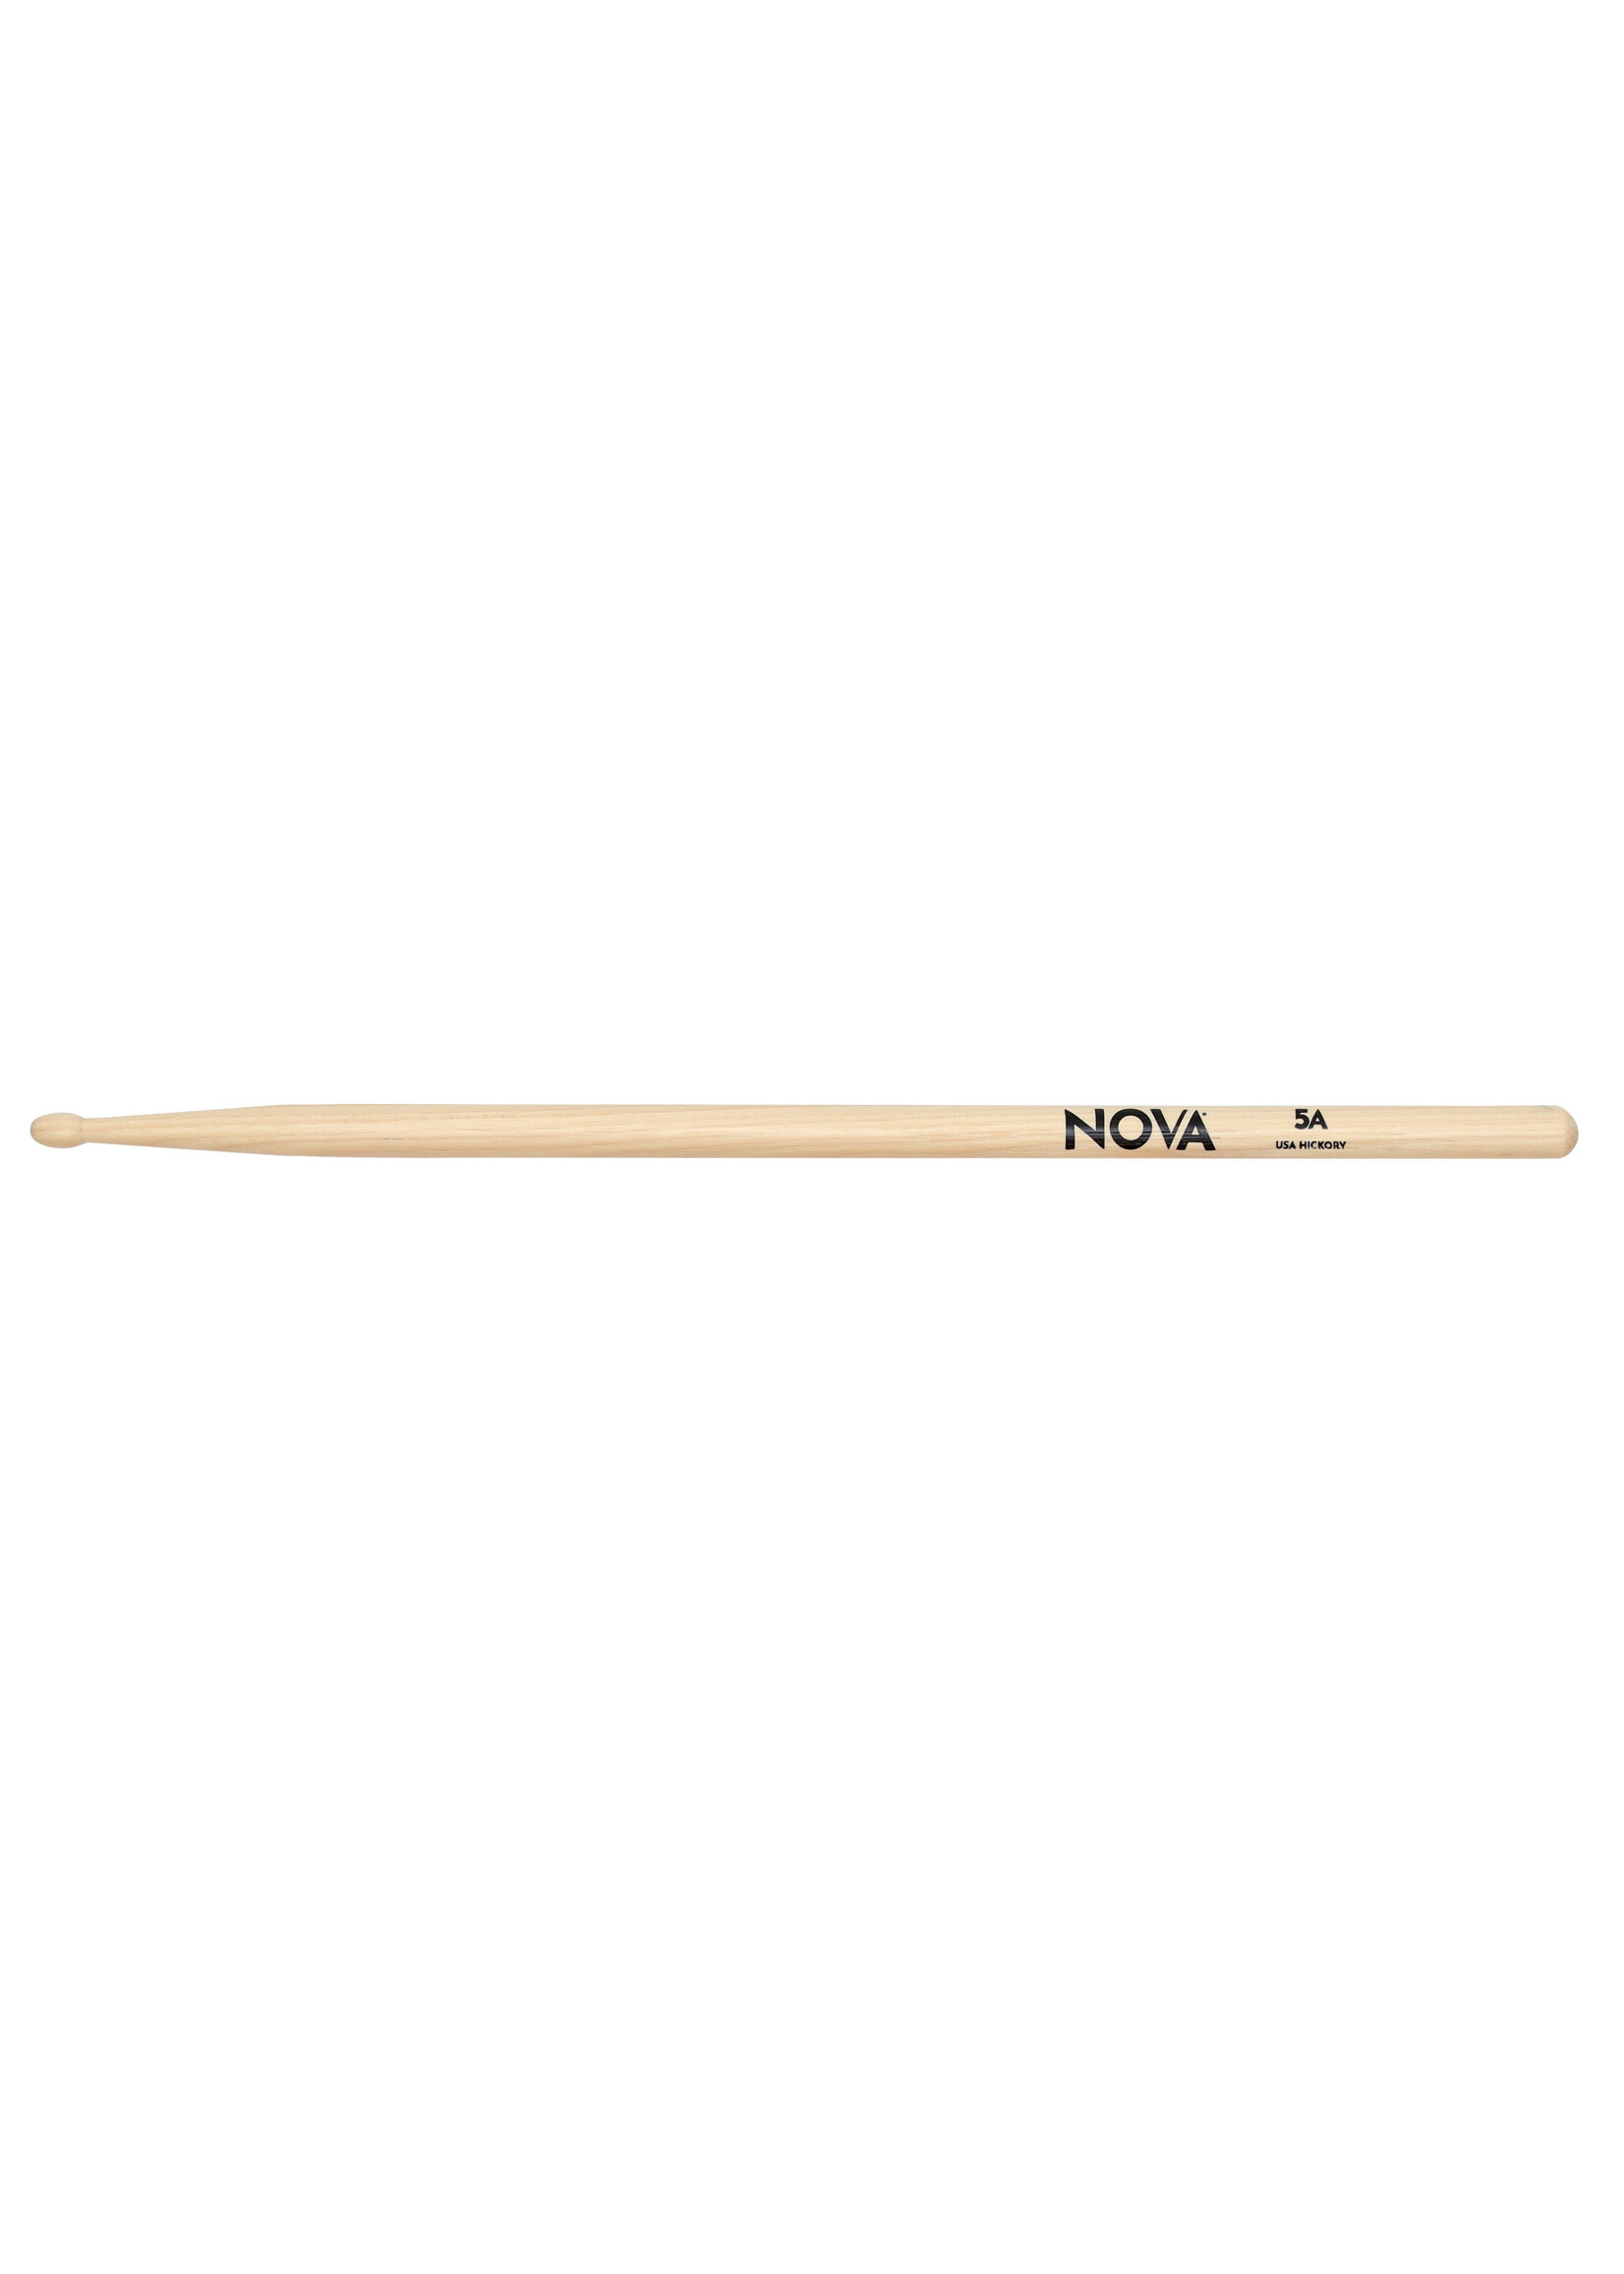 Nova Nova by Vic Firth Drum Sticks